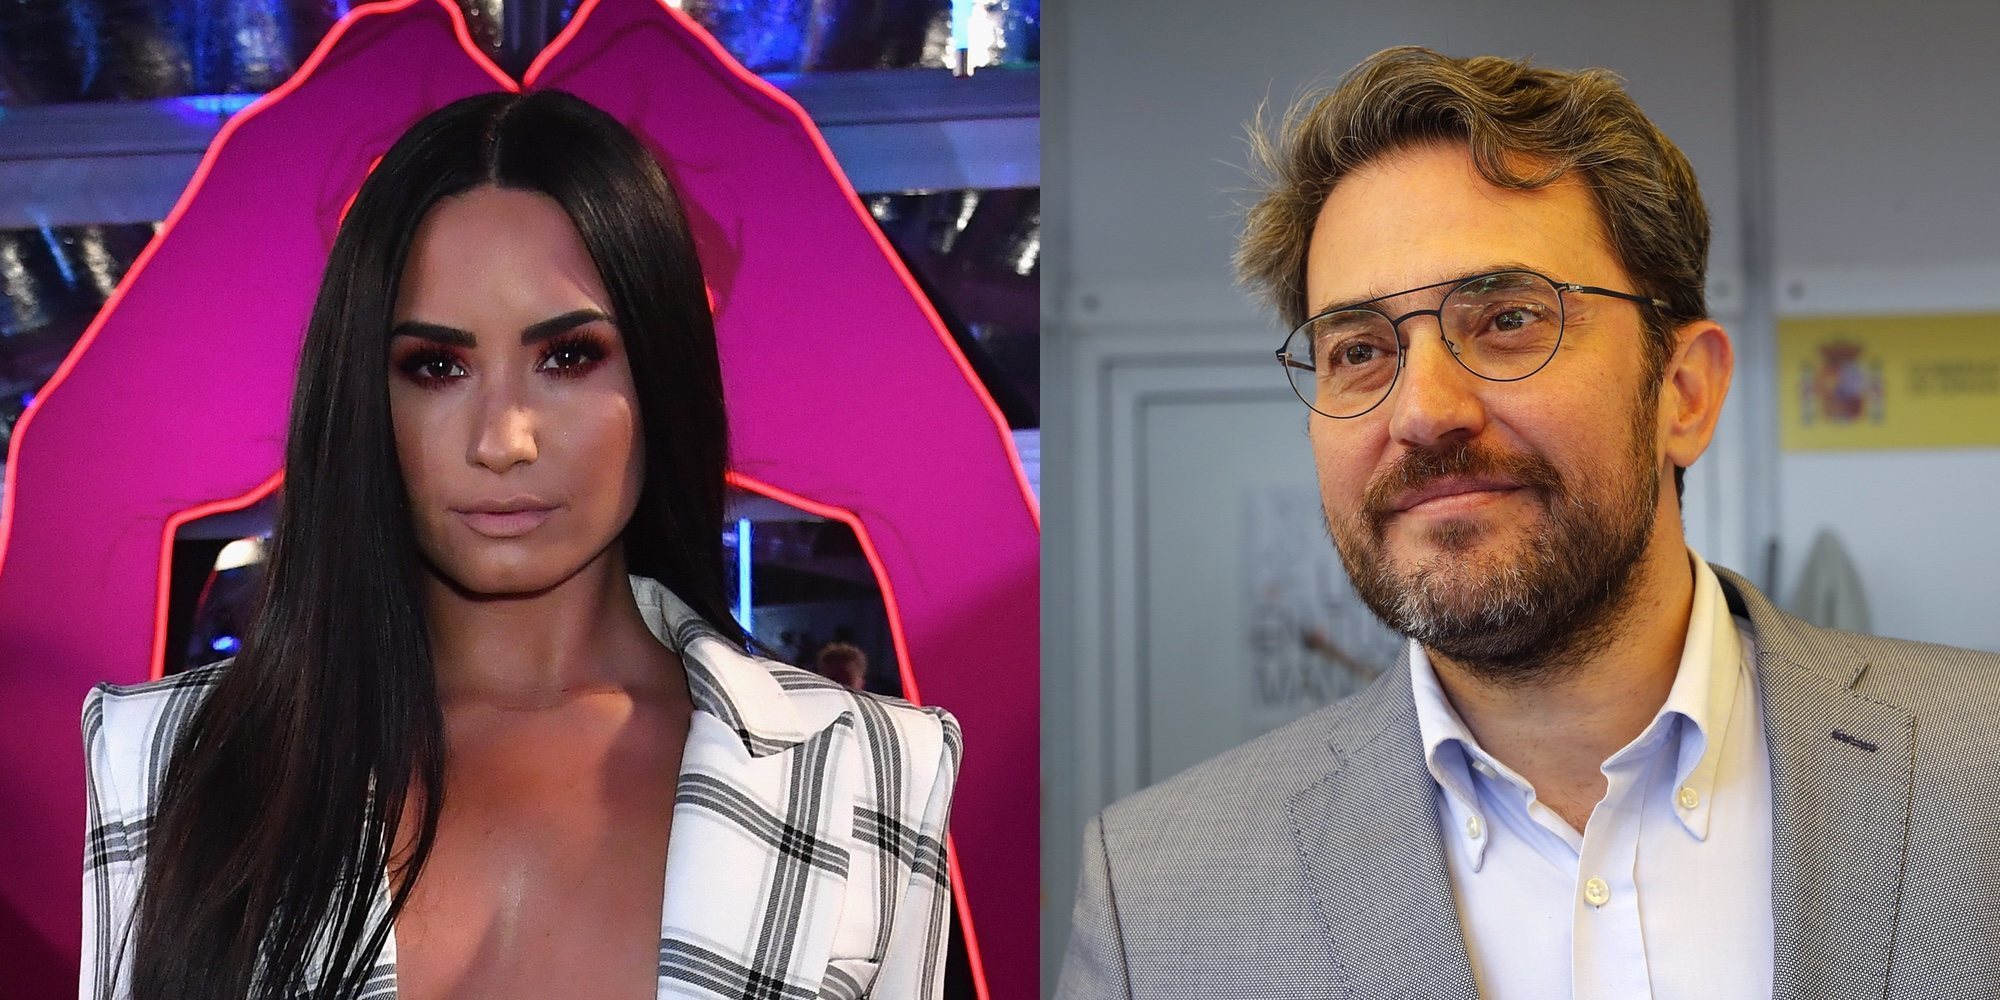 Los 5 escándalos más sonados de 2018: del Máster de Cristina Cifuentes a la sobredosis de Demi Lovato